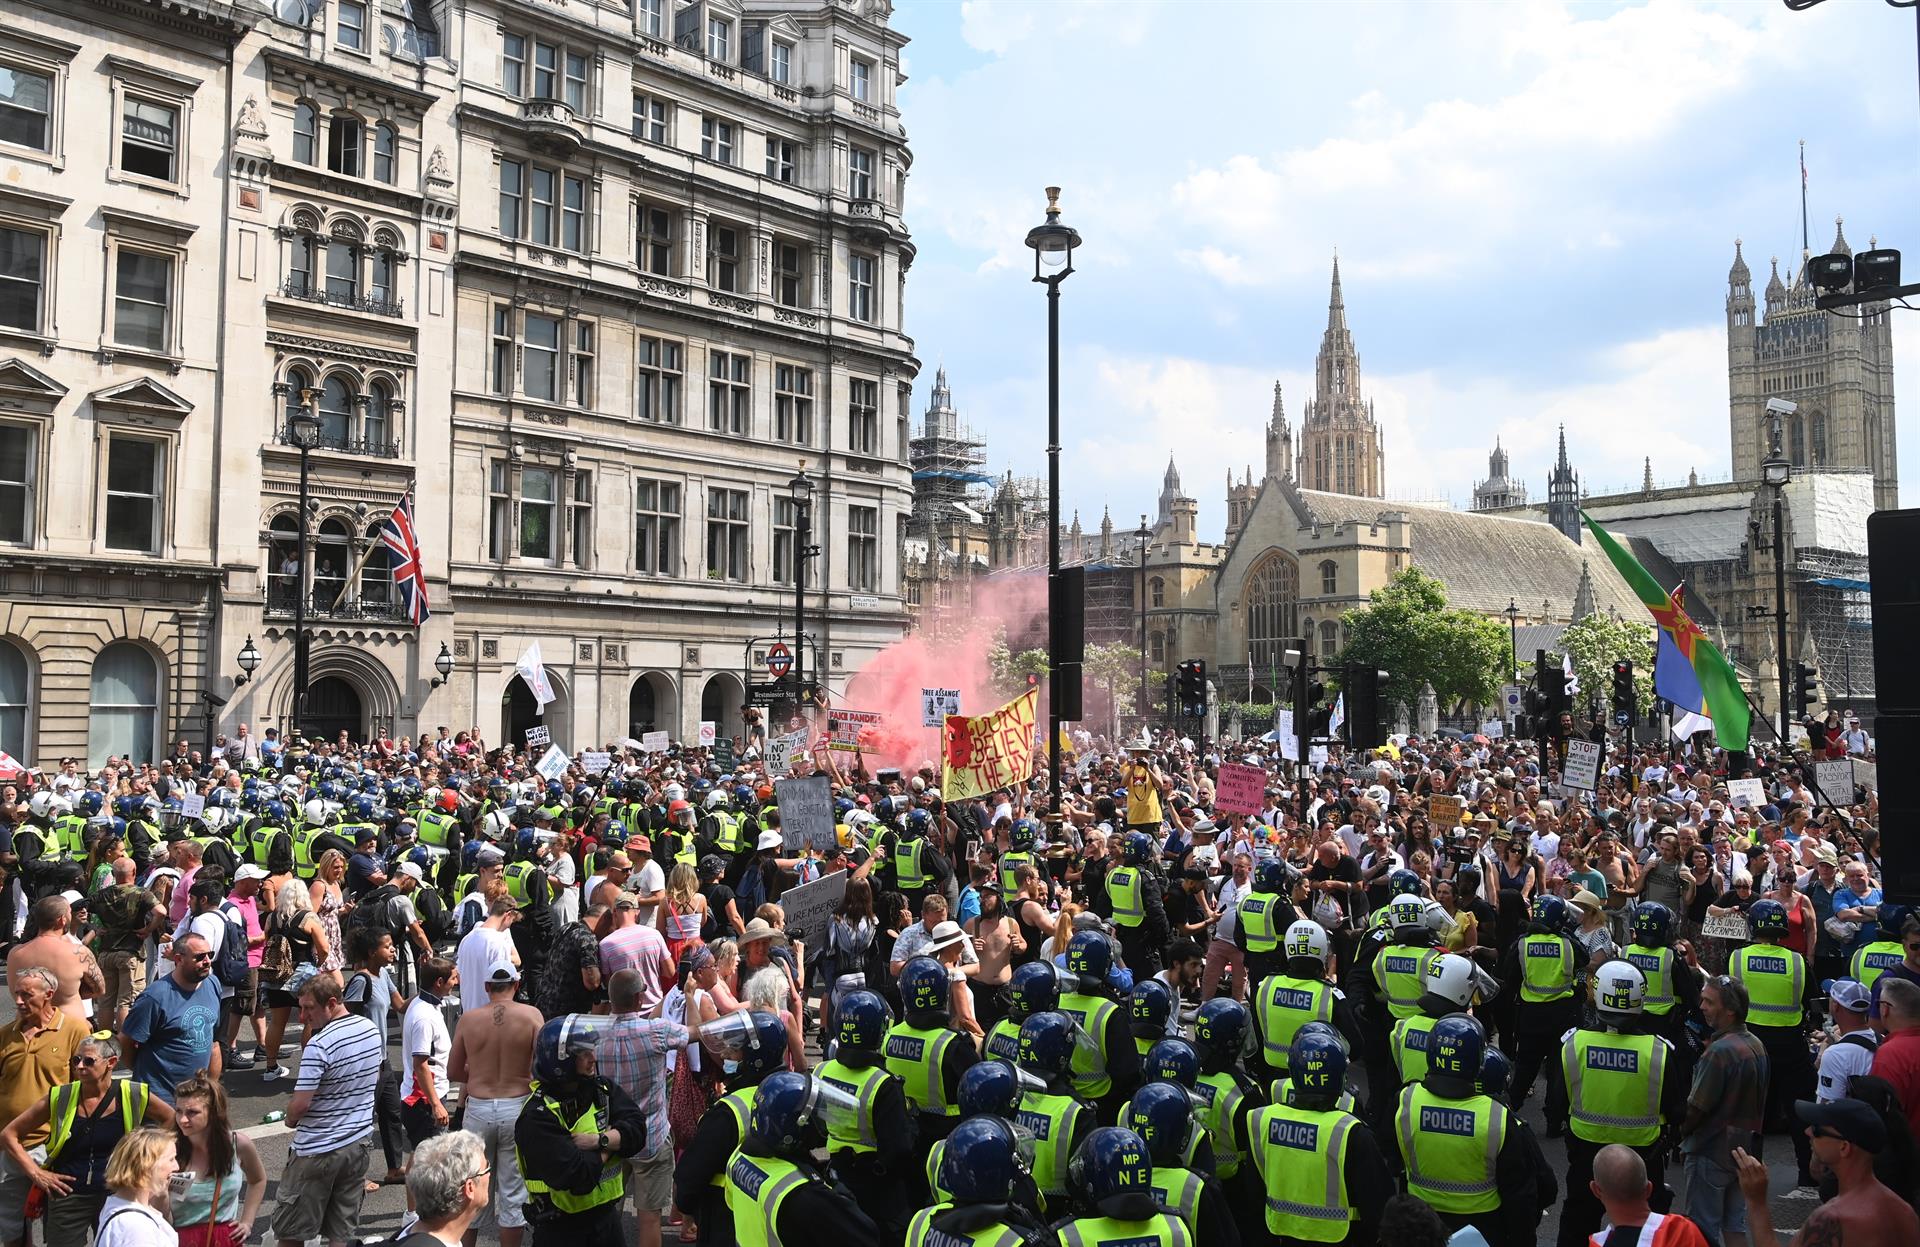 ¡Insensatez! Manifestantes anti-cuarentena protestan en Londres tras levantarse las restricciones (FOTOS)